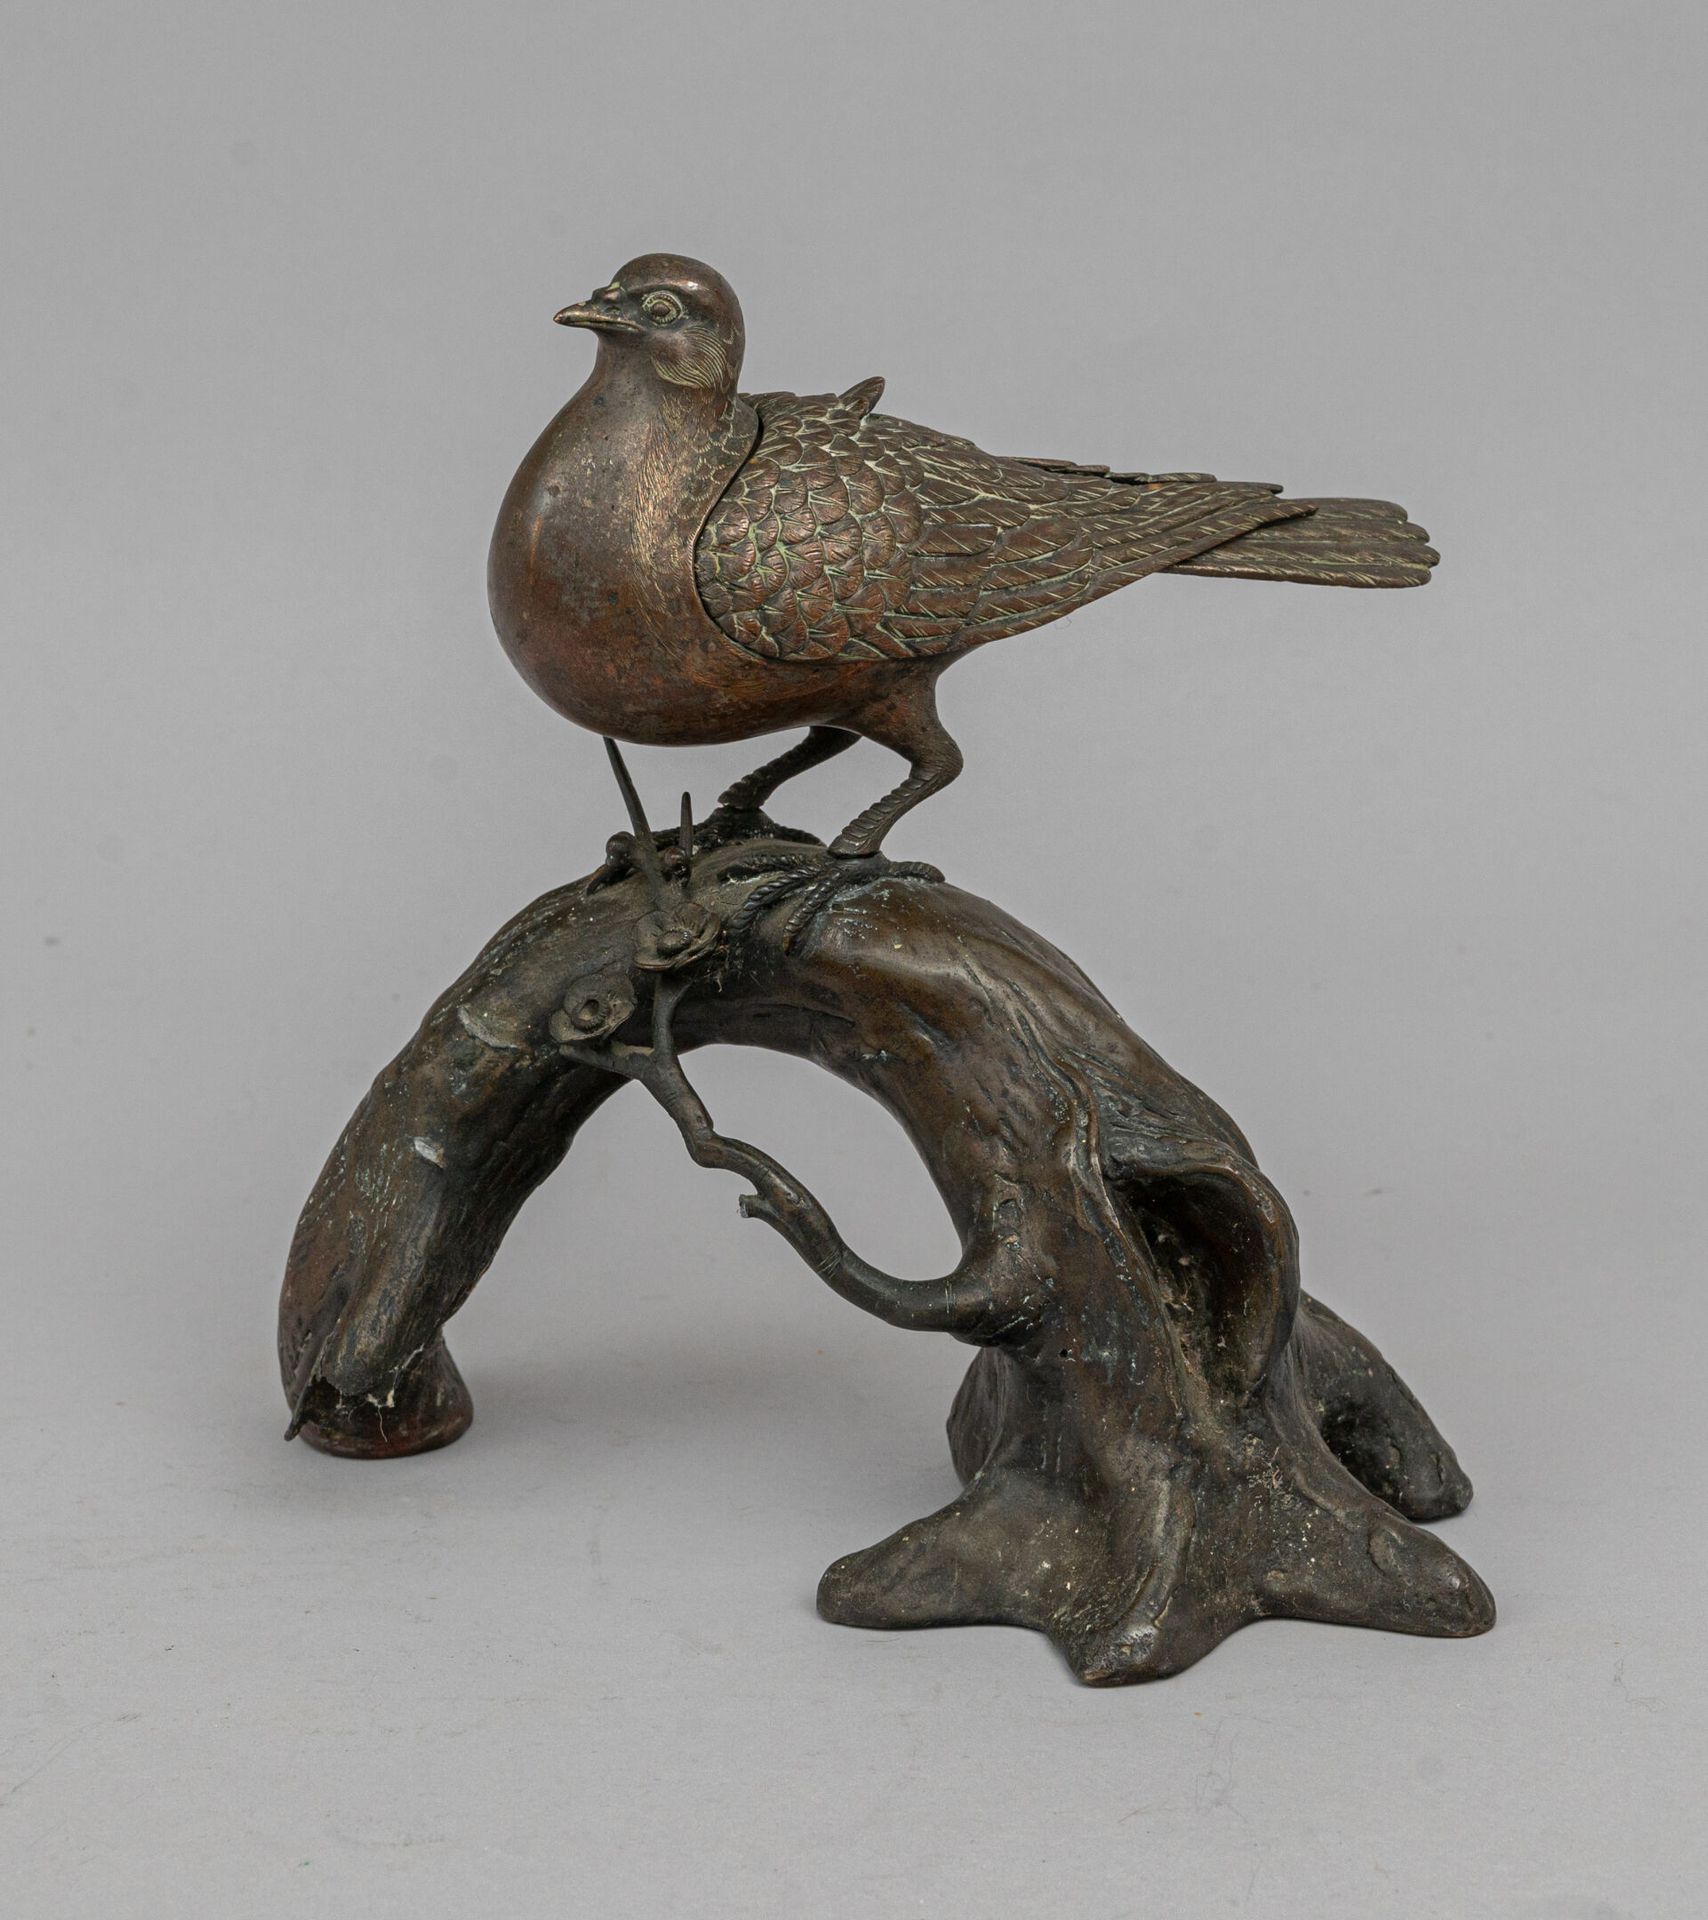 Null 青铜香炉，日本，明治时期（1868-1912 年）
表现的是一只鸟（鸽子或鸽子类）栖息在梅花枝上，羽毛上有刻痕，盖子由其翅膀（有开口）形成。一只翅膀已&hellip;